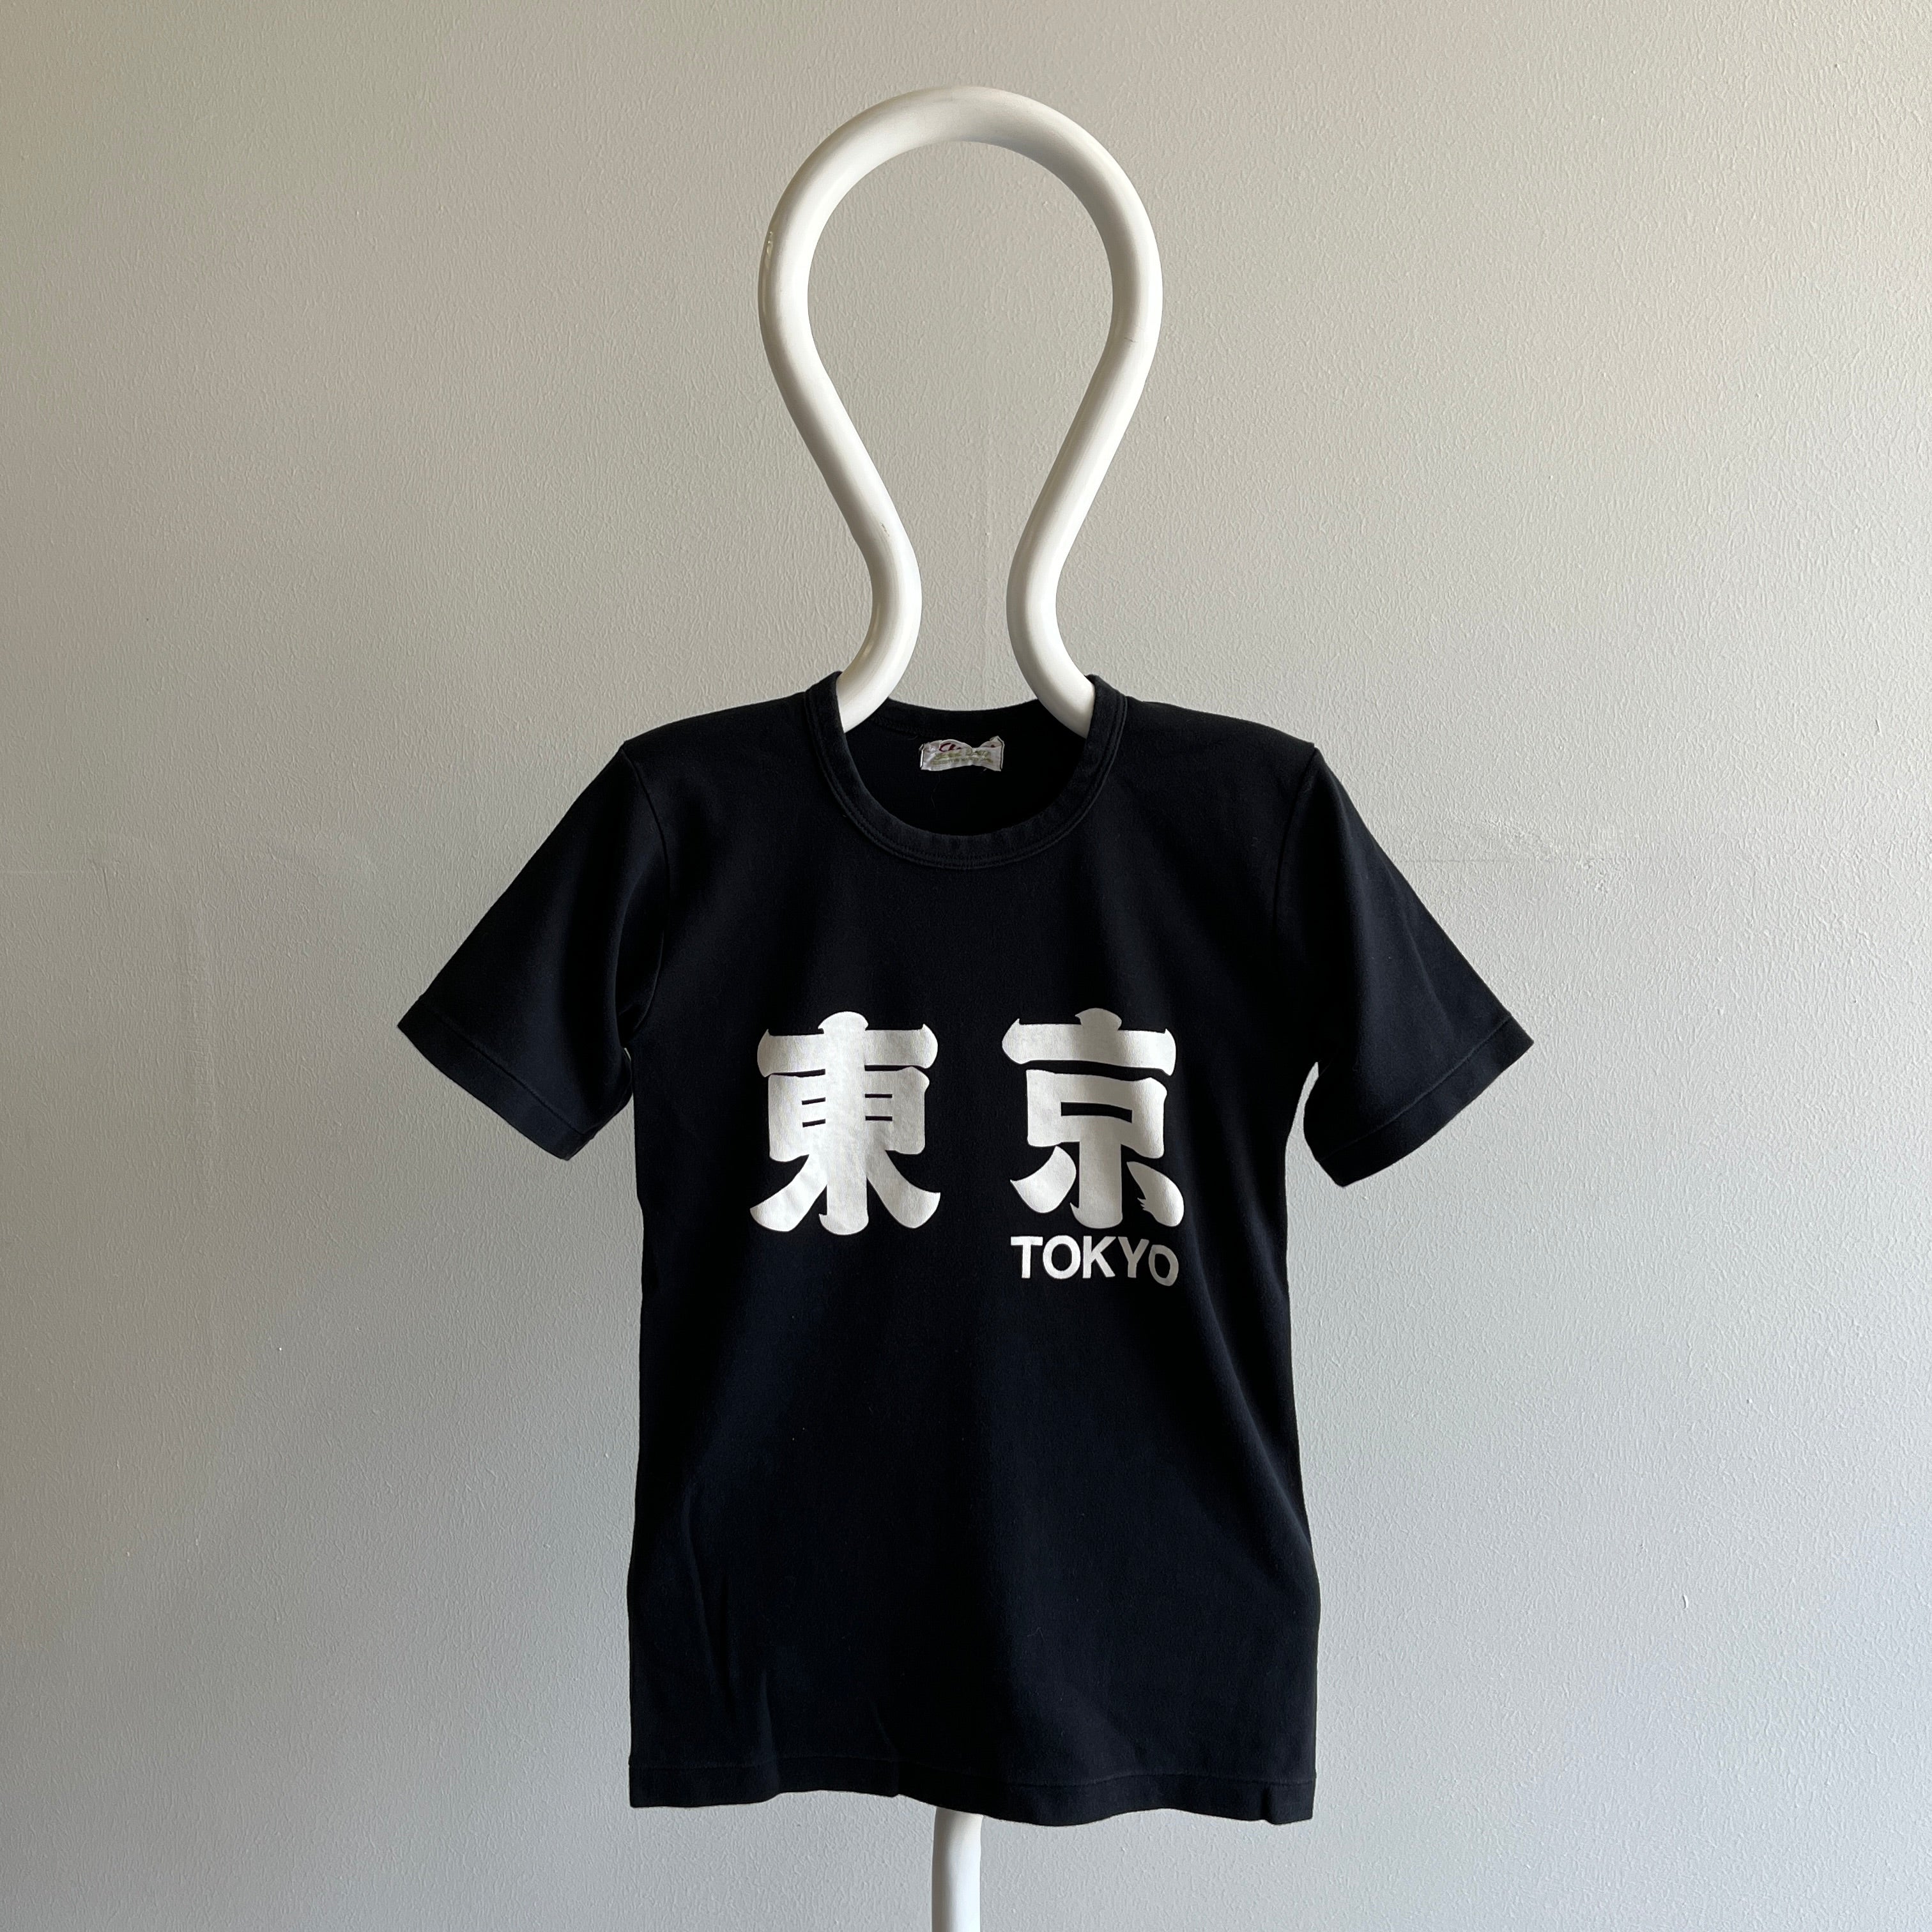 T-shirt touristique en tricot Tokyo des années 1970/80 fabriqué au Japon